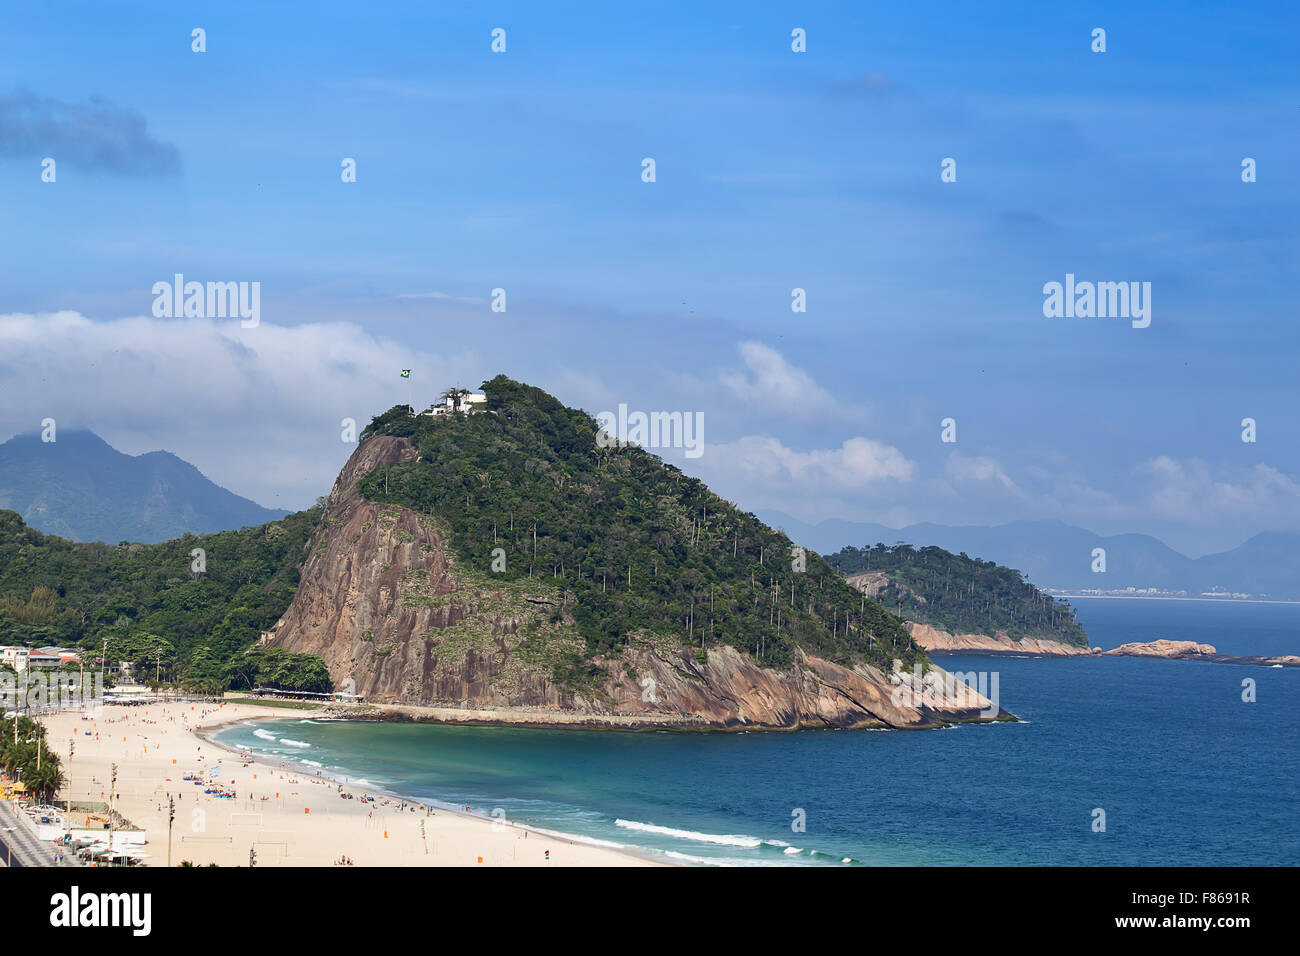 Famous Copacabana beach in Rio de Janeiro, Brasil Stock Photo